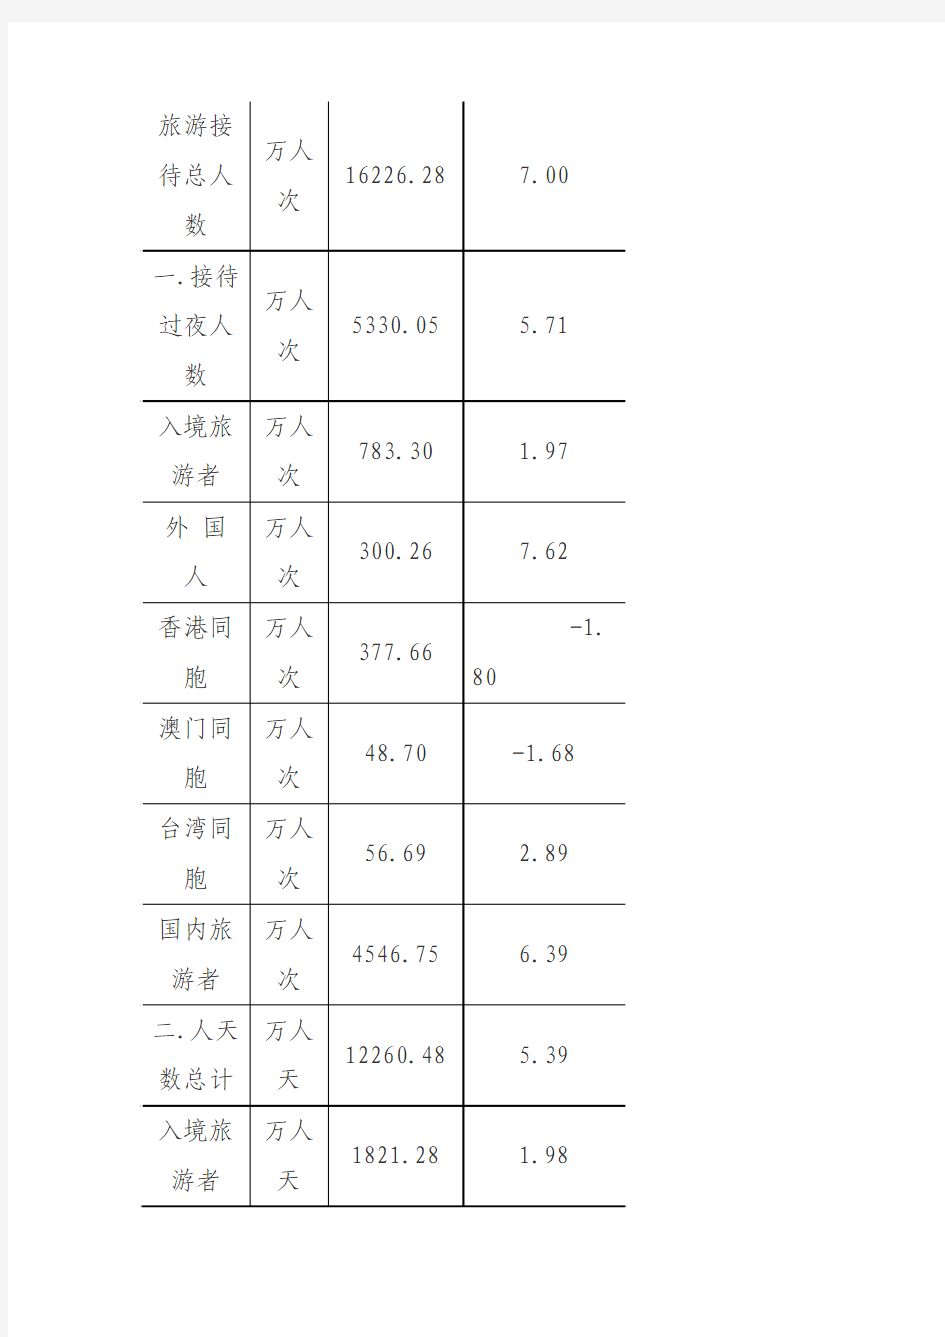 2014广州旅游统计分析报告(整理资料)